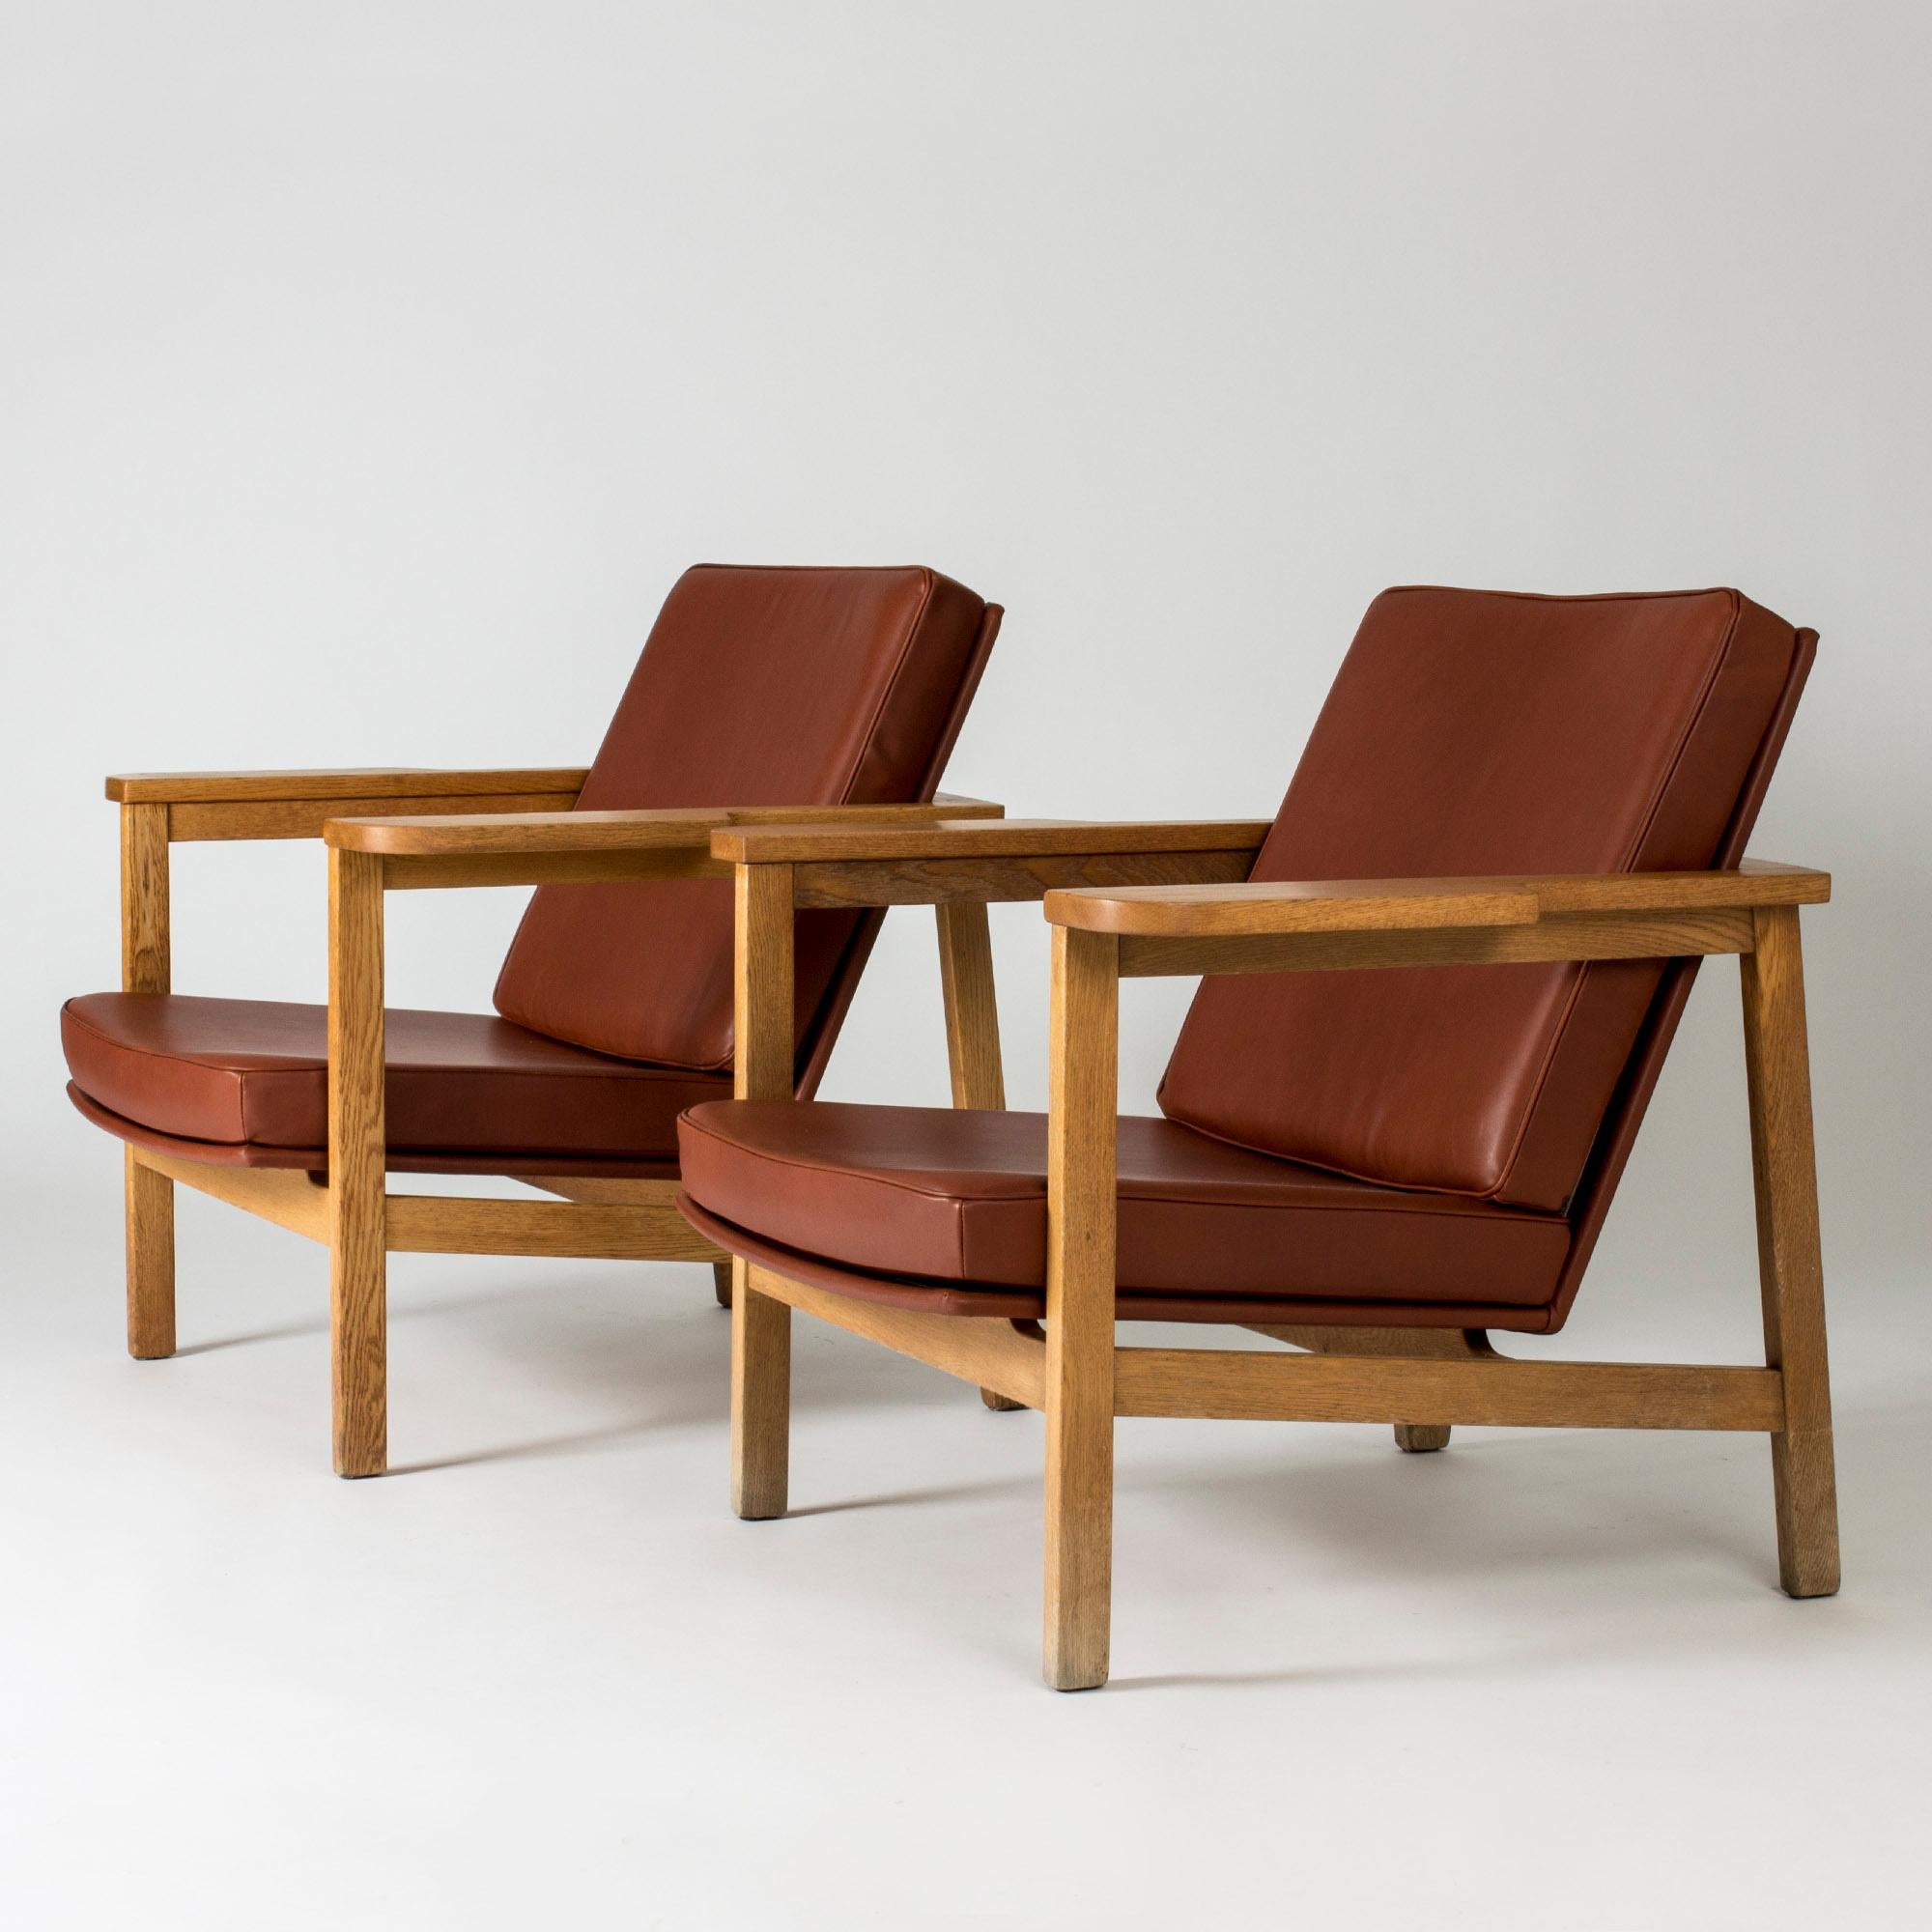 Paire de chaises longues rares de Carl-Axel Acking au design imposant et luxueux. Cadre en chêne massif avec de larges accoudoirs et une silhouette élégante et ouverte. Sellerie en cuir rouge rouille.